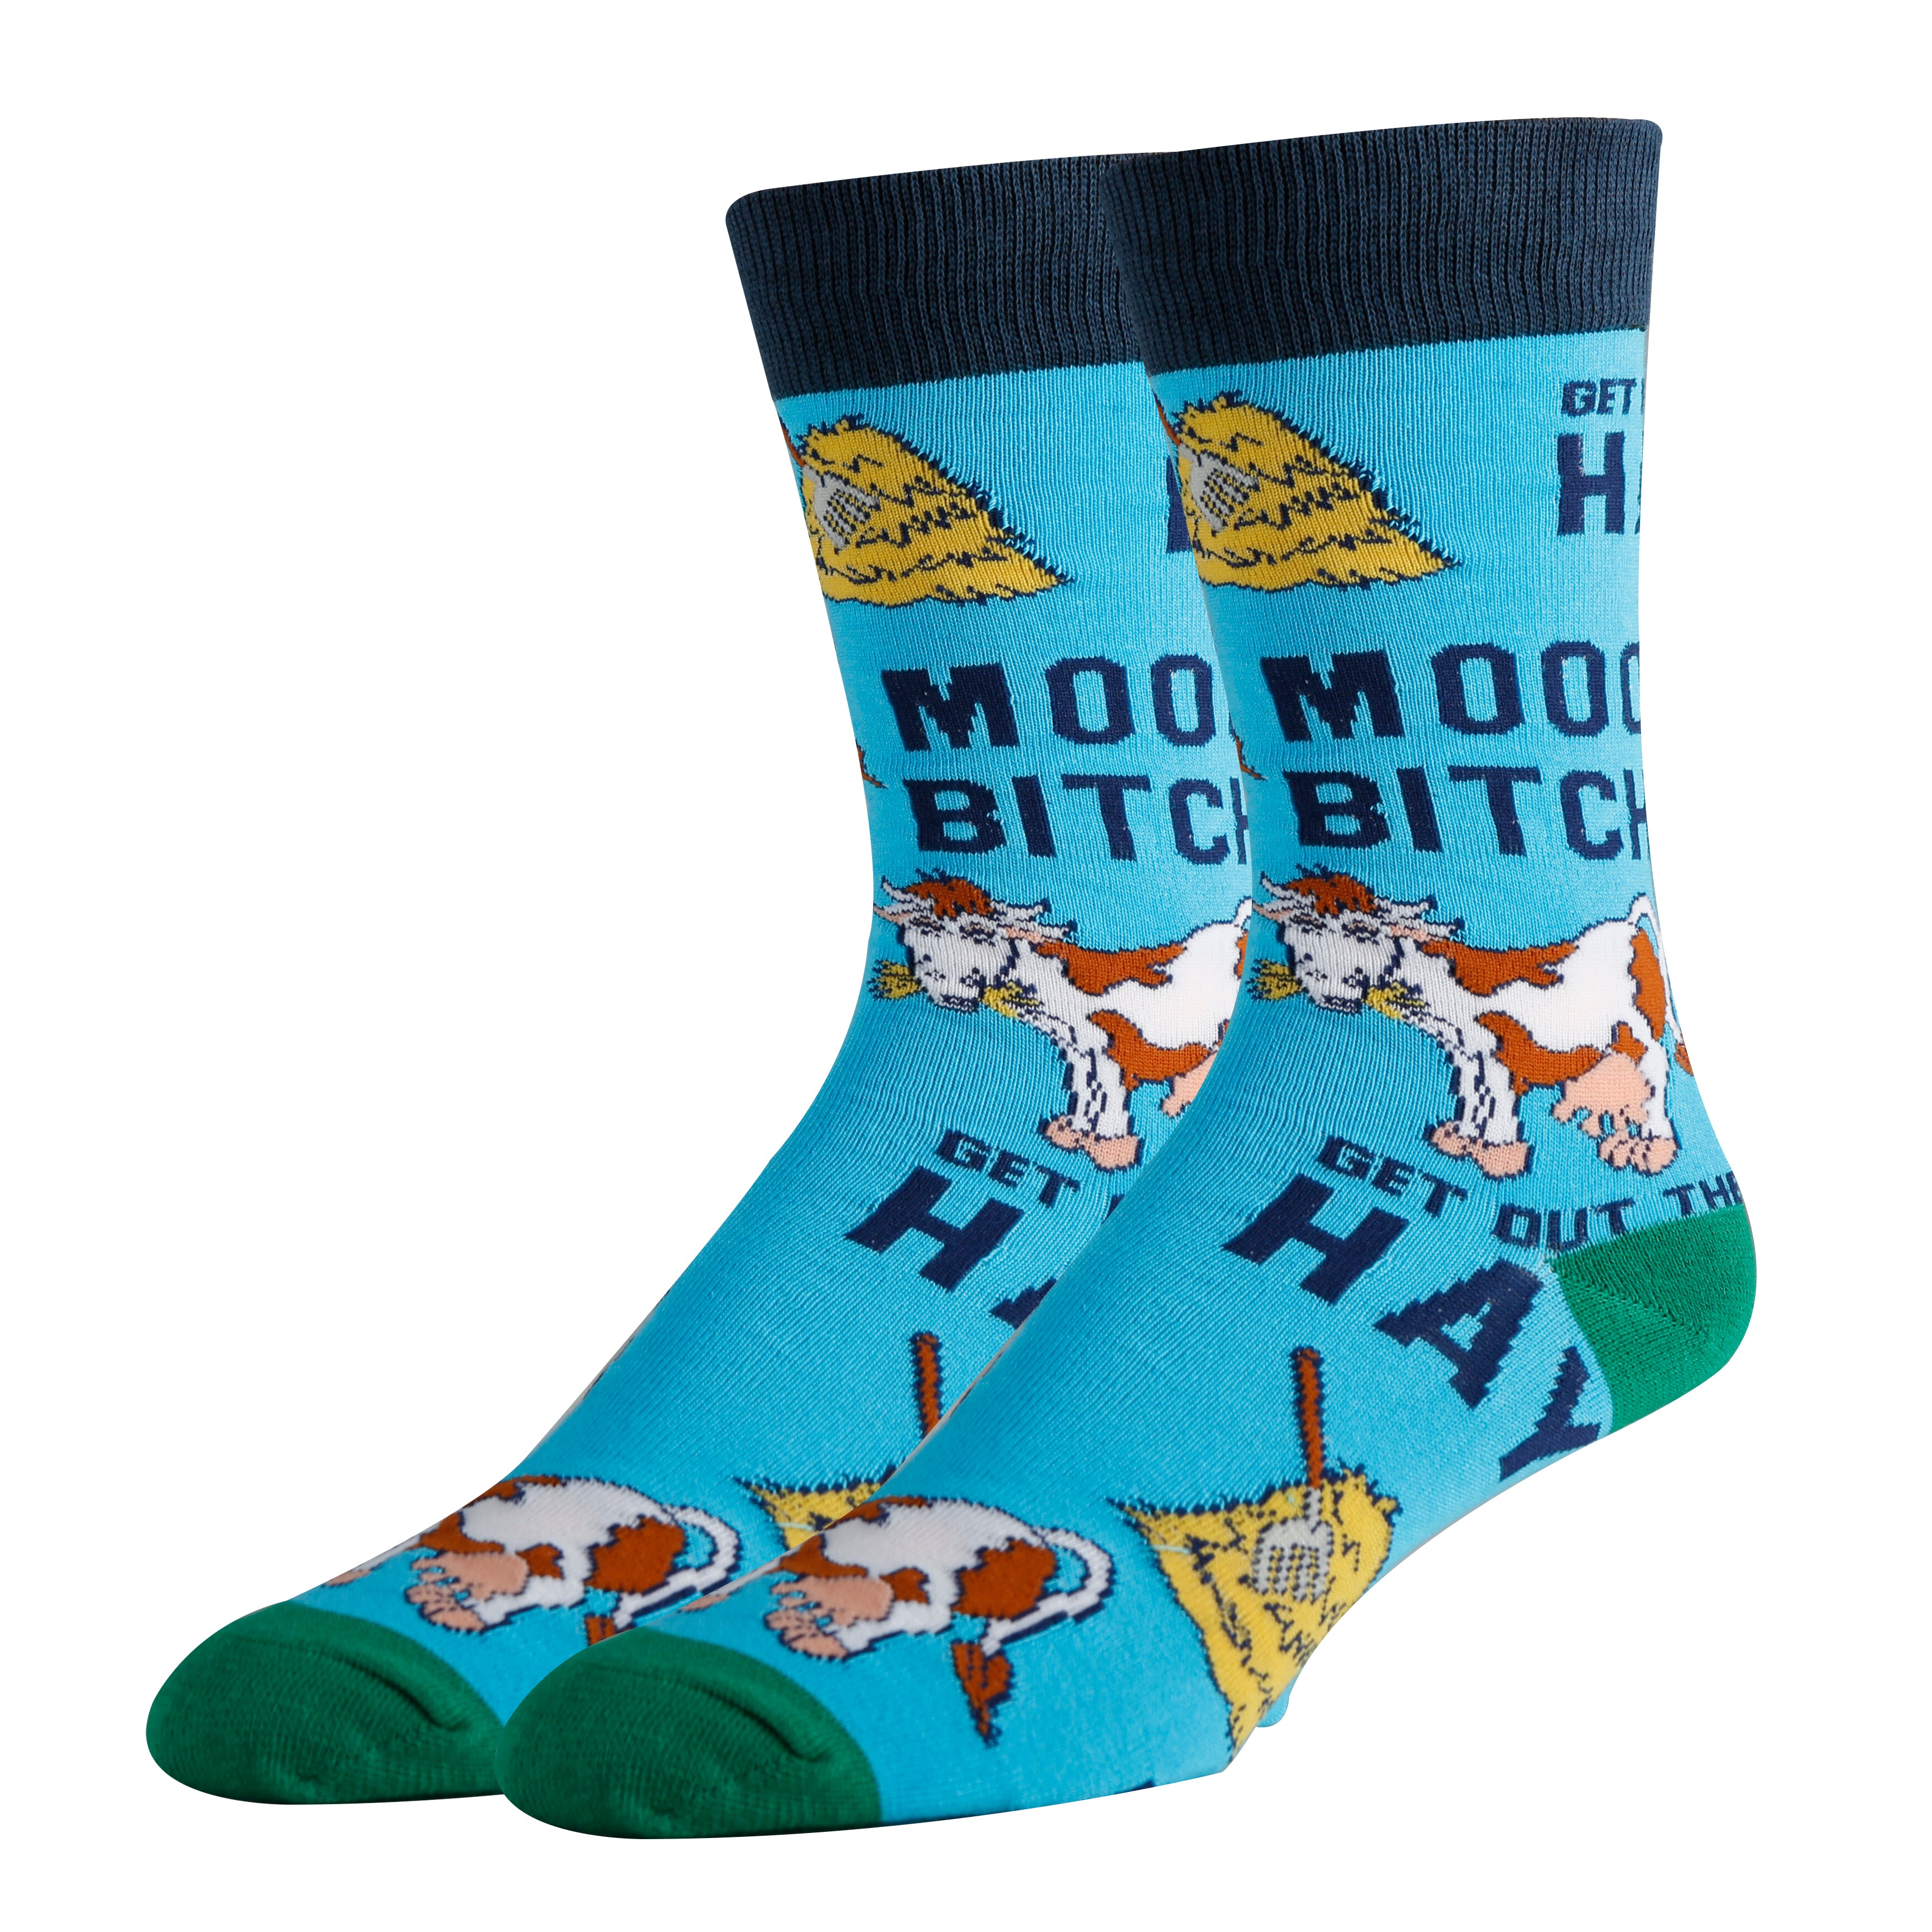 Mooo Over Socks | Sassy Crew Socks For Men